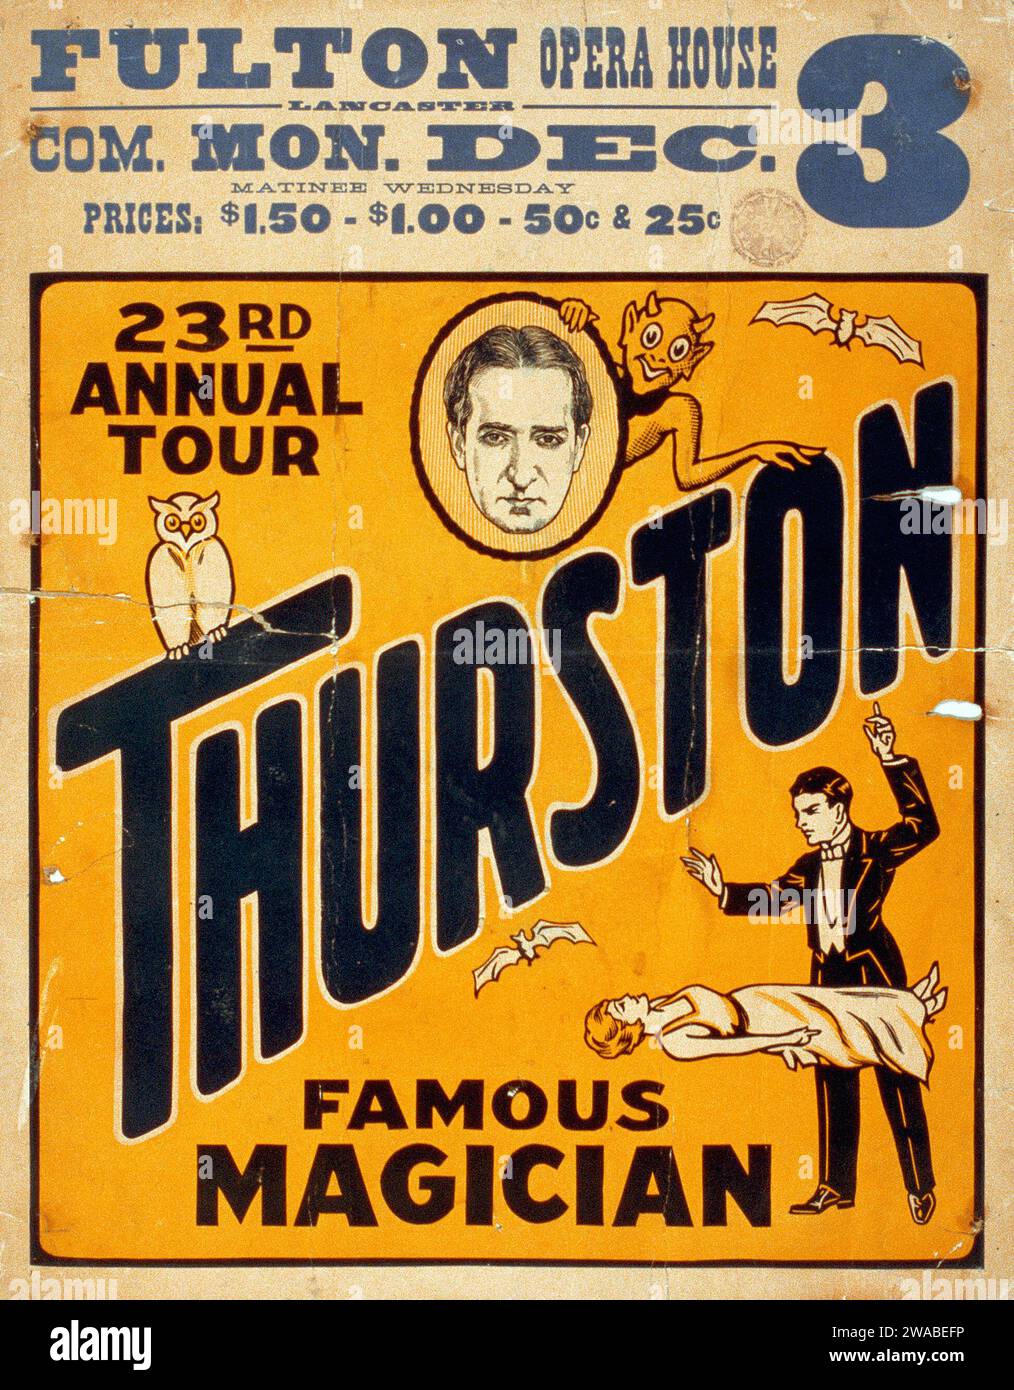 Magic poster - Thurston, famoso mago 23° tour annuale - Fulton Opera House, c 1934 Foto Stock